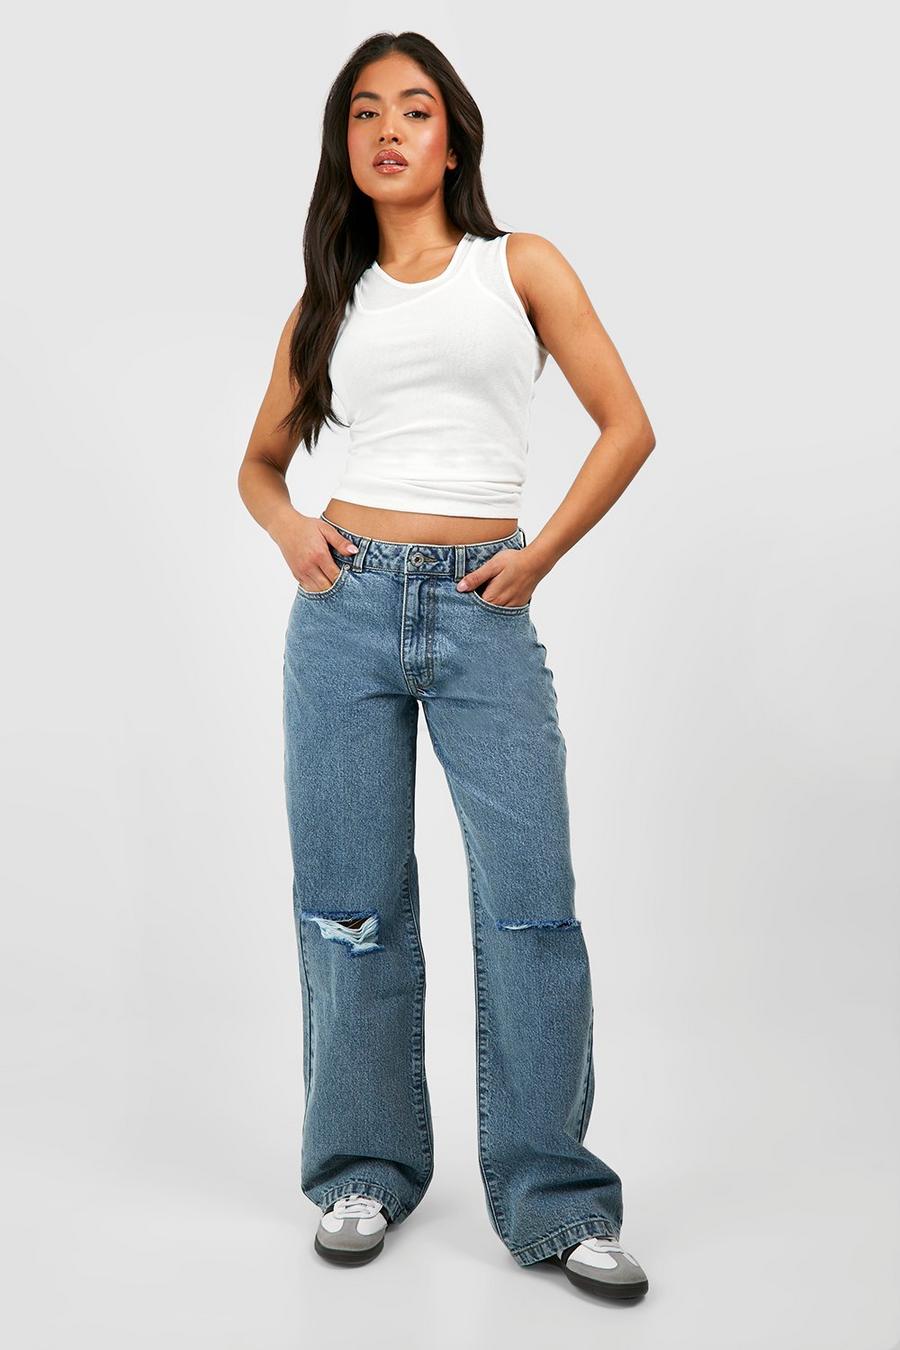 JNGSA Baggy Jeans,Women's Baggy High Waist Jeans Wide Leg Boyfriend  Straight Denim Pants Casual Loose Streetwear Jean Pants Clearance 